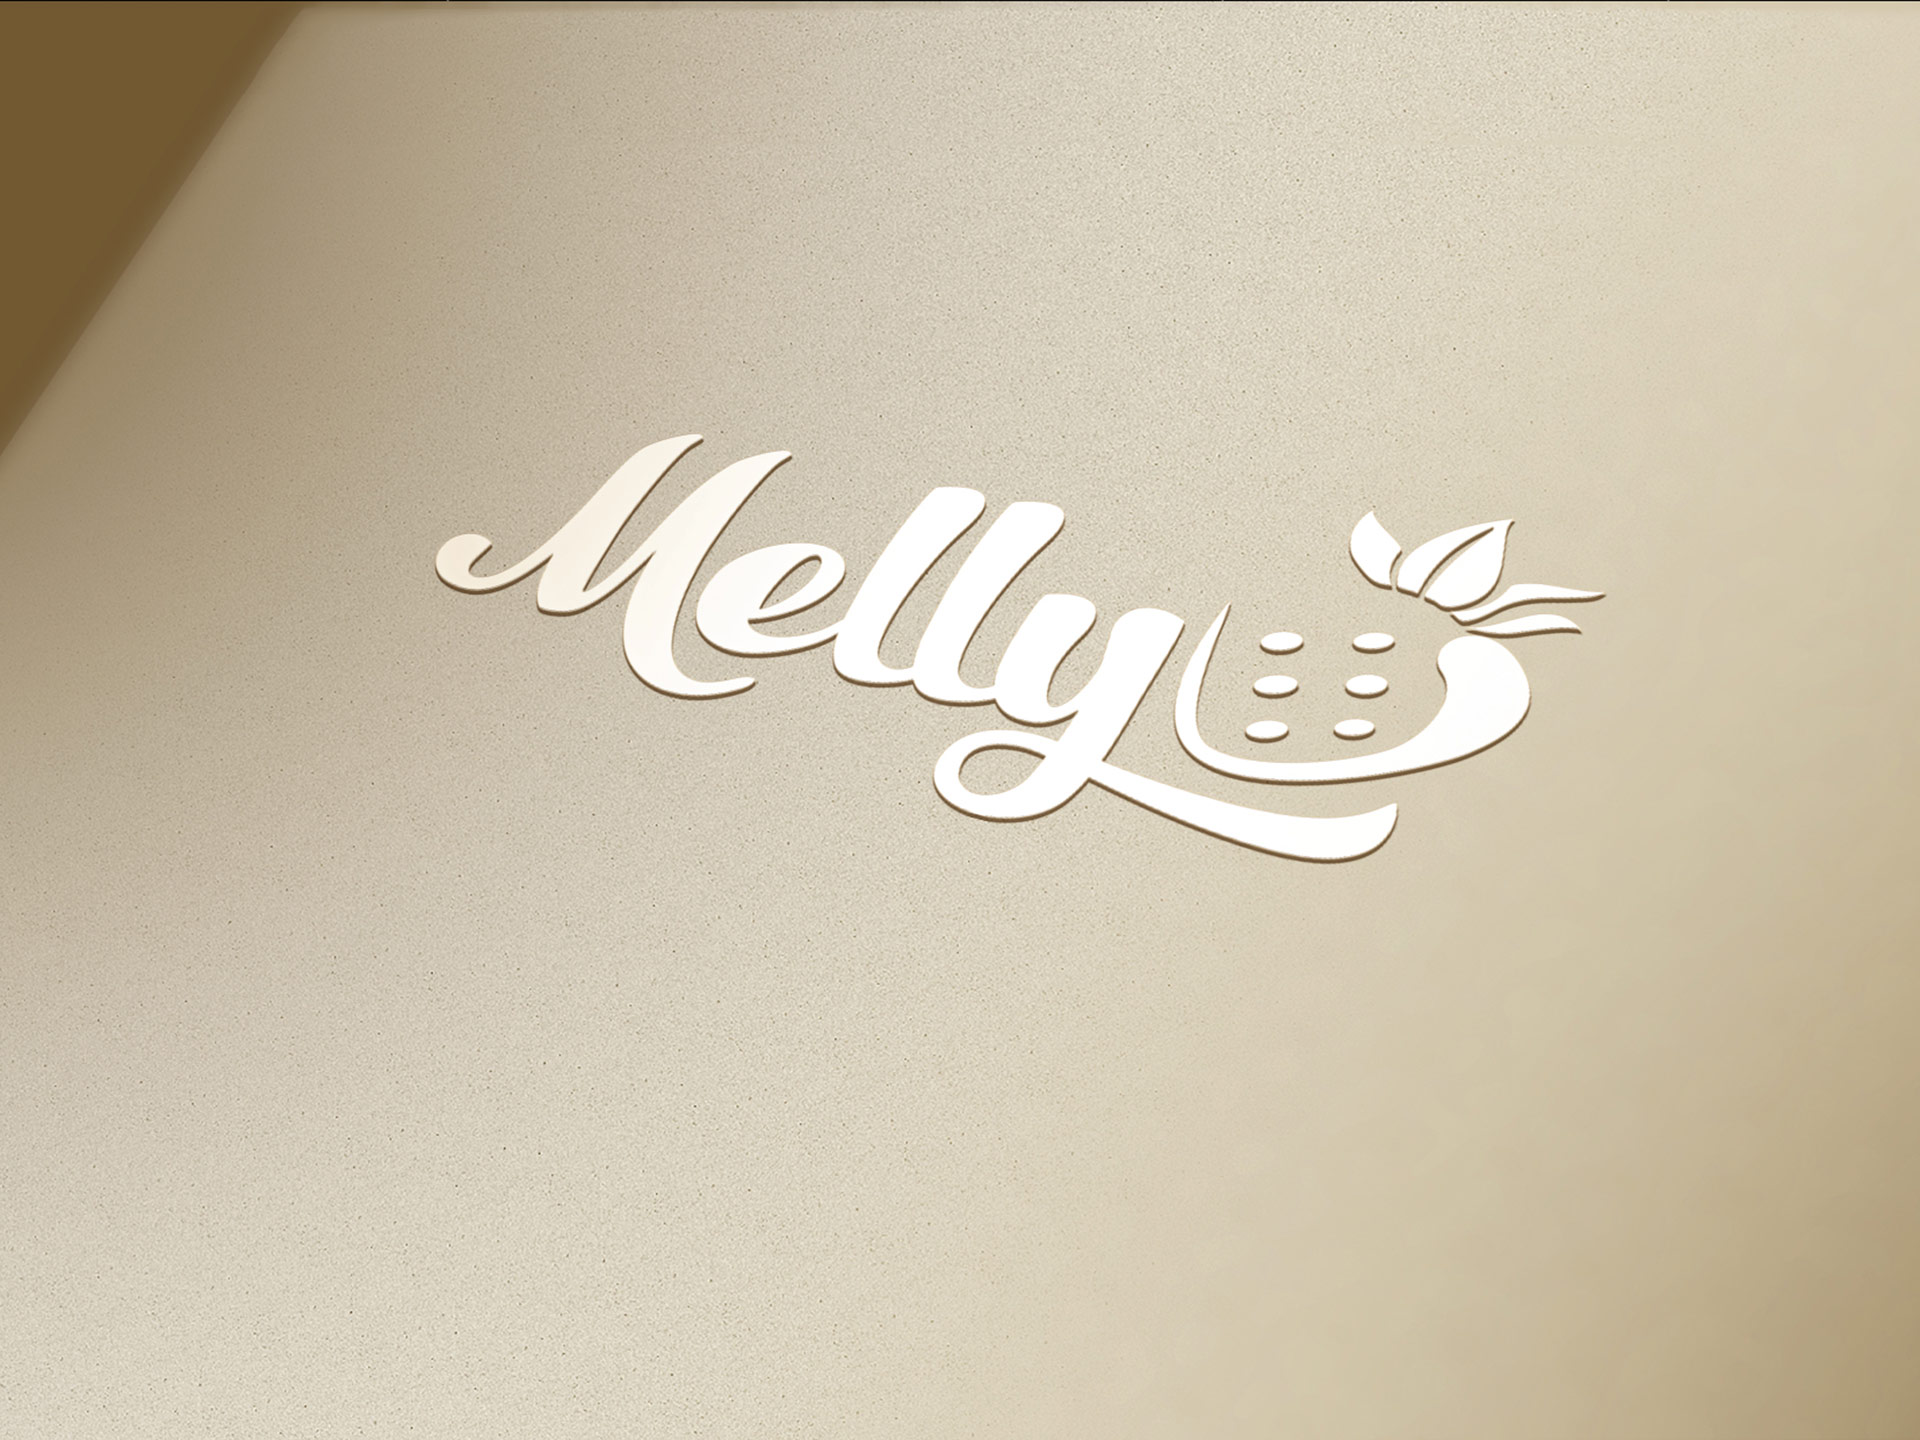 Đặt tên, thiết kế logo và bao bì cho nhãn hàng Melly tại TP HCM